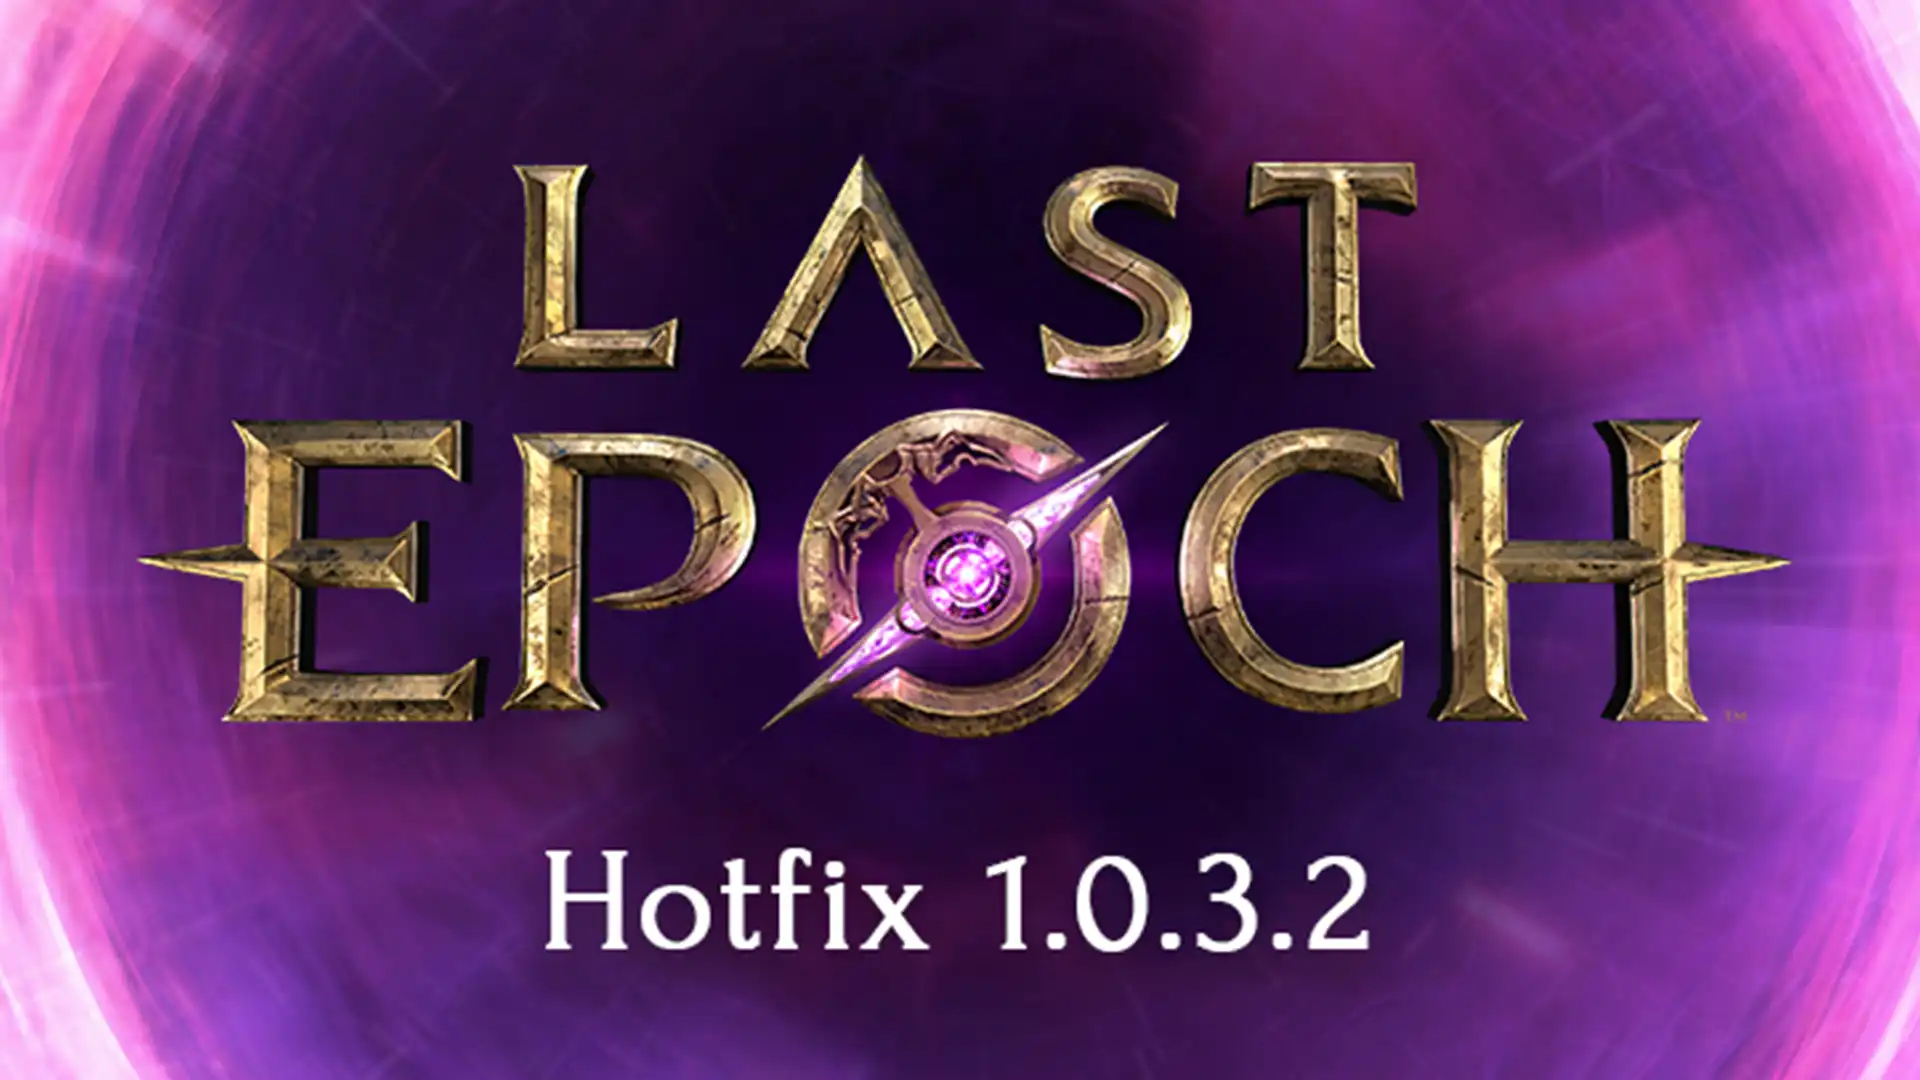 Обновление Last Epoch 1.0.3.2 добавляет исправления для более гладкой игры.